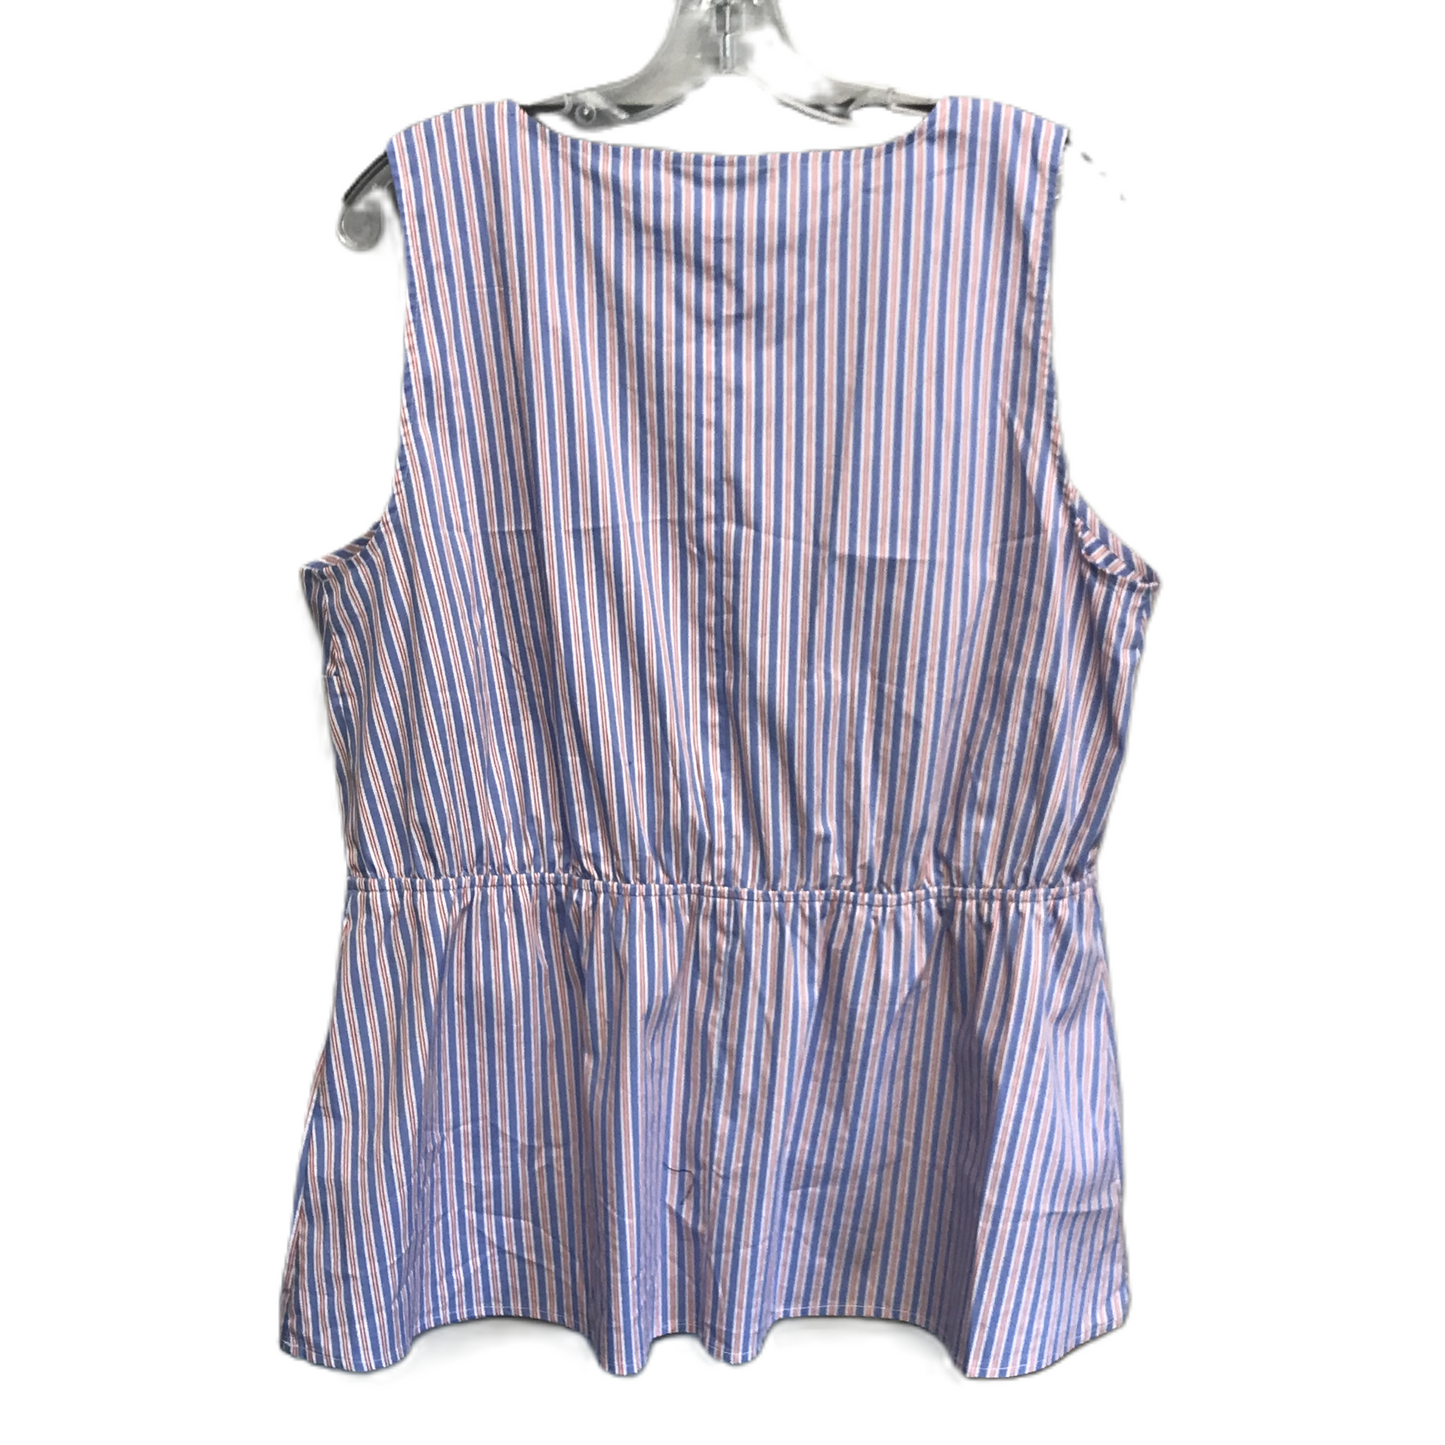 Striped Pattern Top Sleeveless By Lane Bryant, Size: Xl